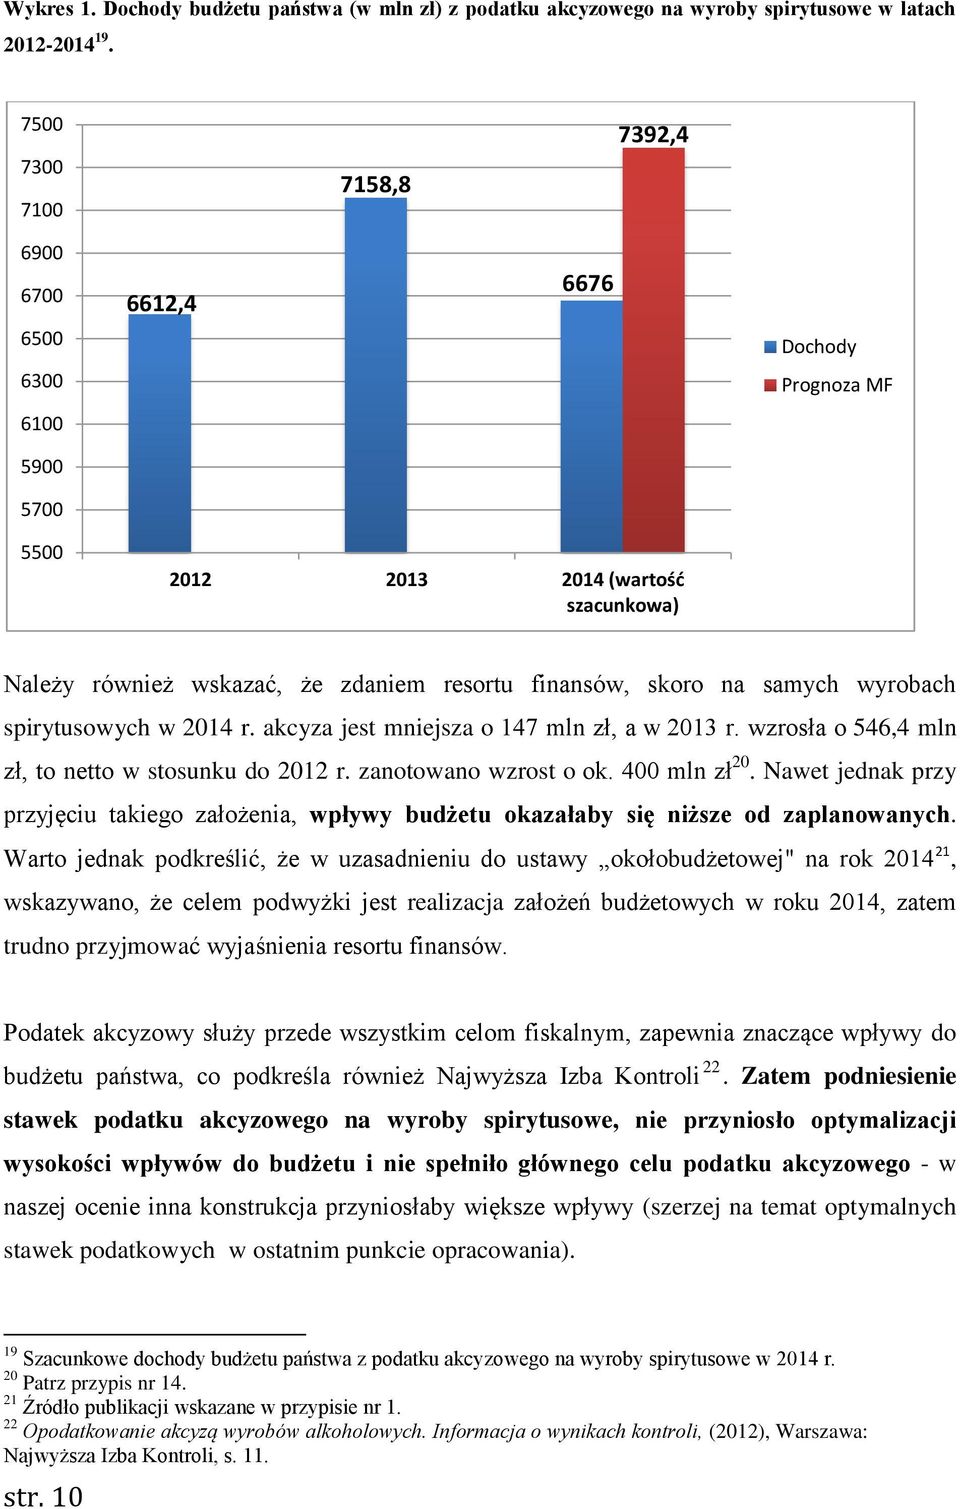 samych wyrobach spirytusowych w 2014 r. akcyza jest mniejsza o 147 mln zł, a w 2013 r. wzrosła o 546,4 mln zł, to netto w stosunku do 2012 r. zanotowano wzrost o ok. 400 mln zł 20.